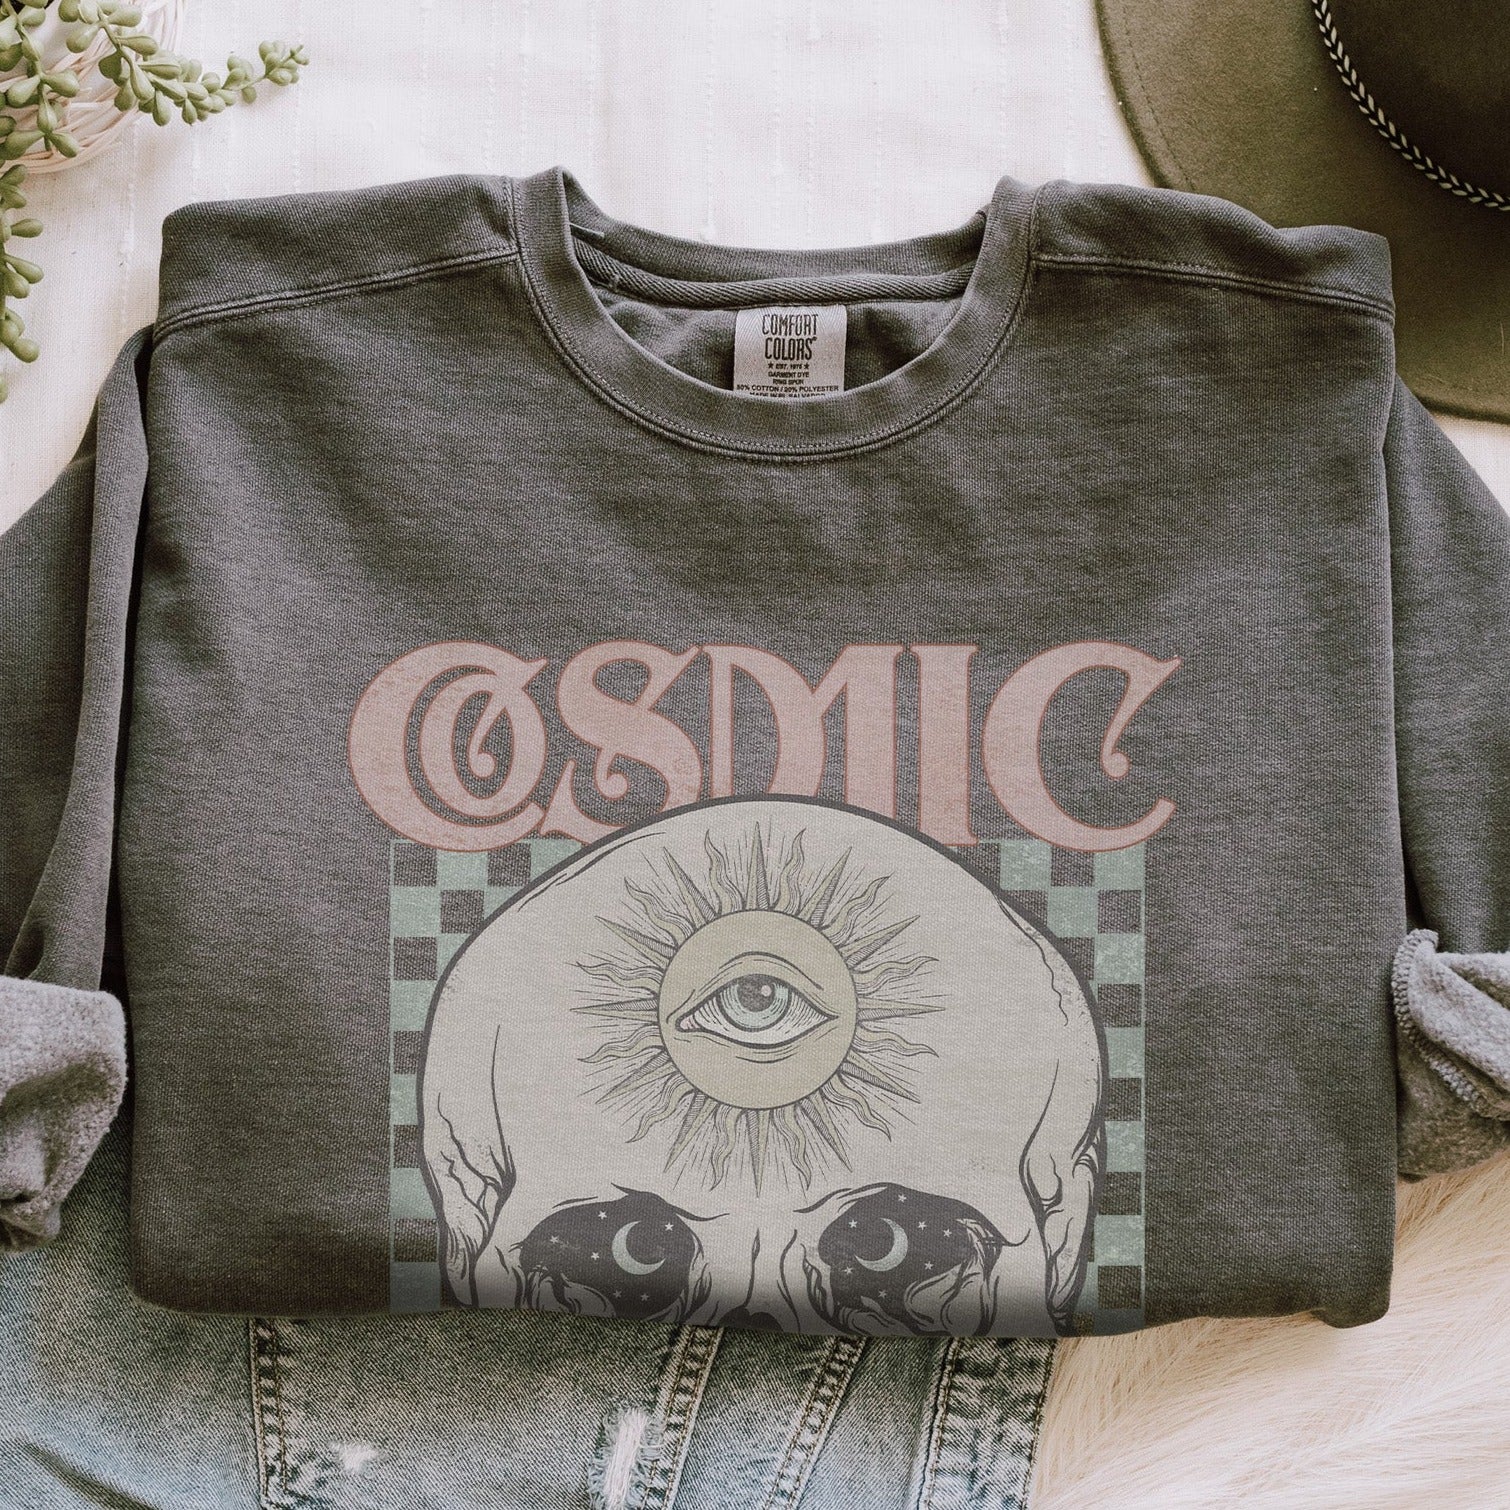 Cosmic Dreamer Comfort Colors Sweatshirt